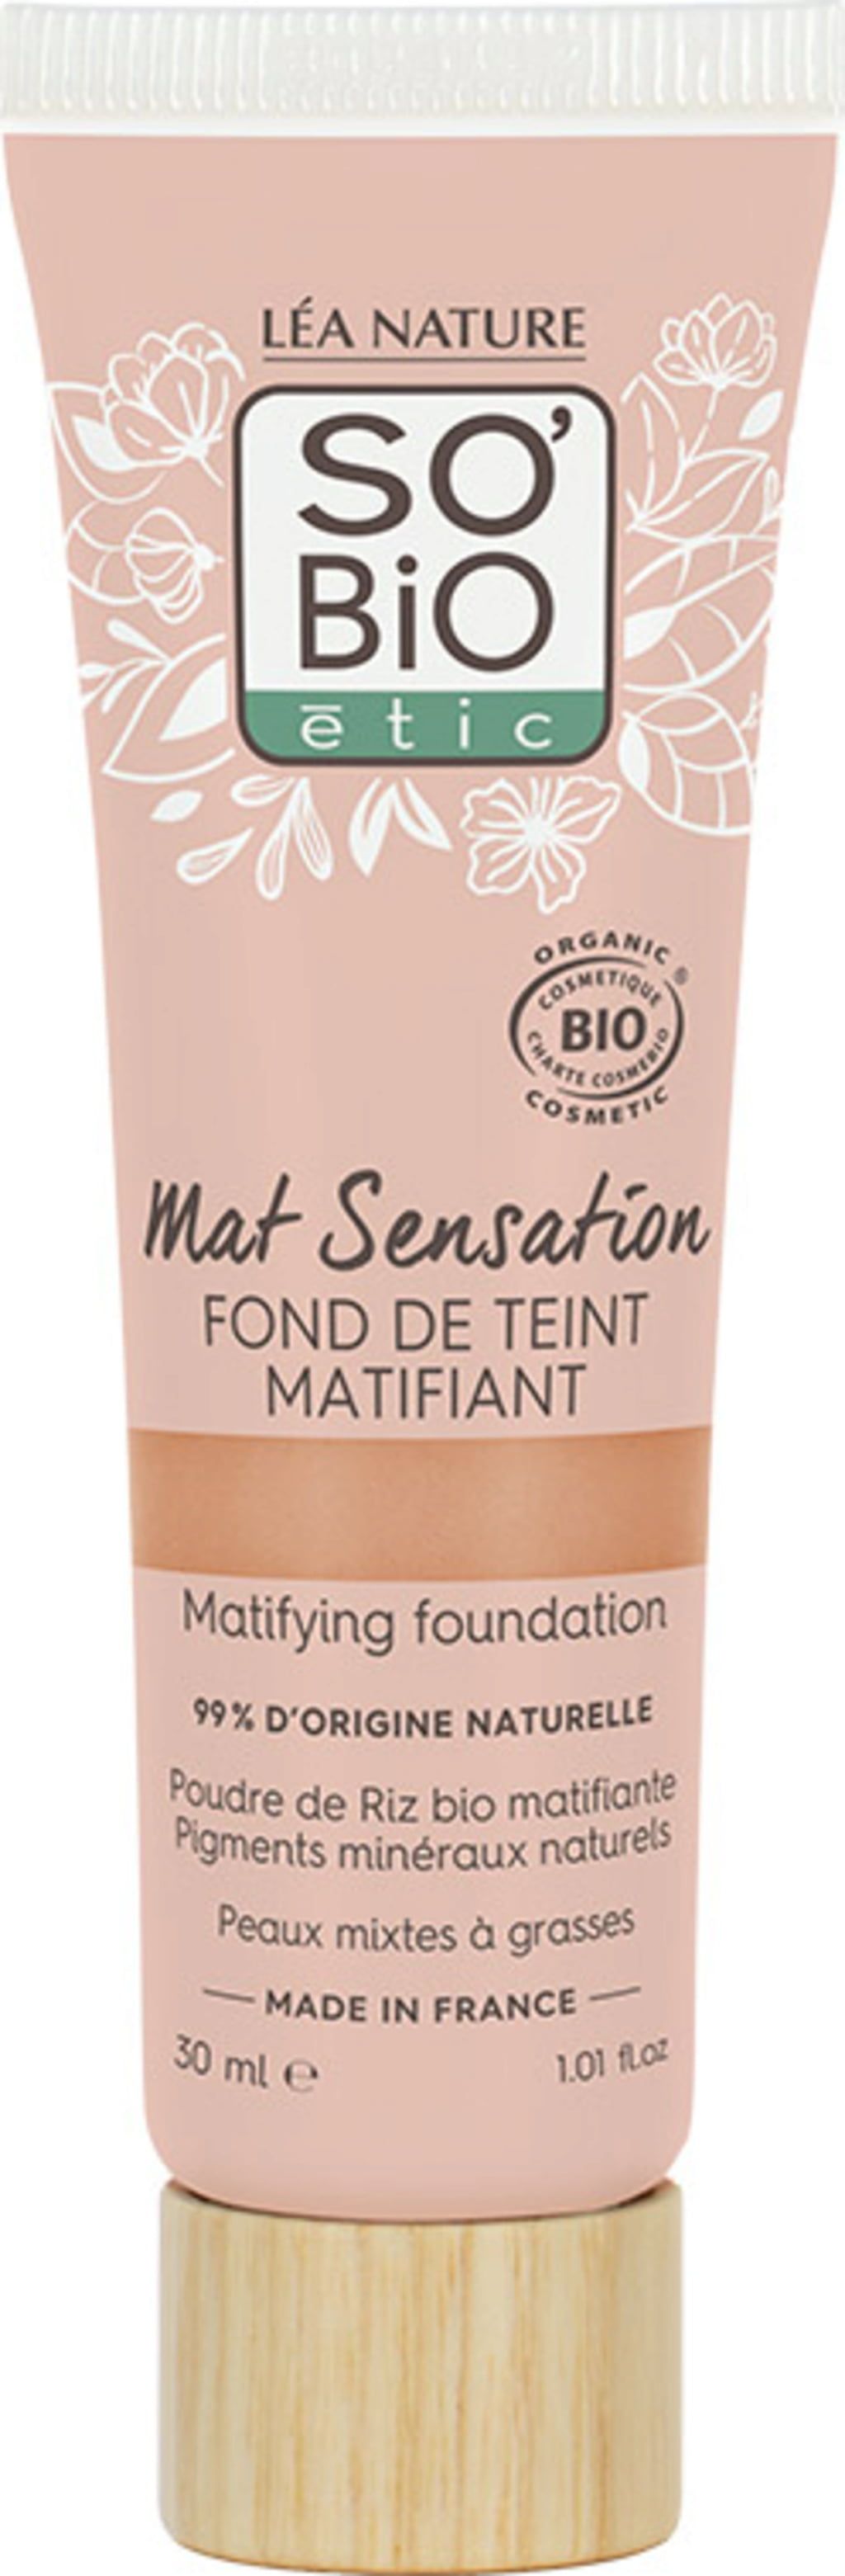 LÉA NATURE SO BiO étic Mat Sensation Mattierende Foundation - Ecco Verde  Online Shop